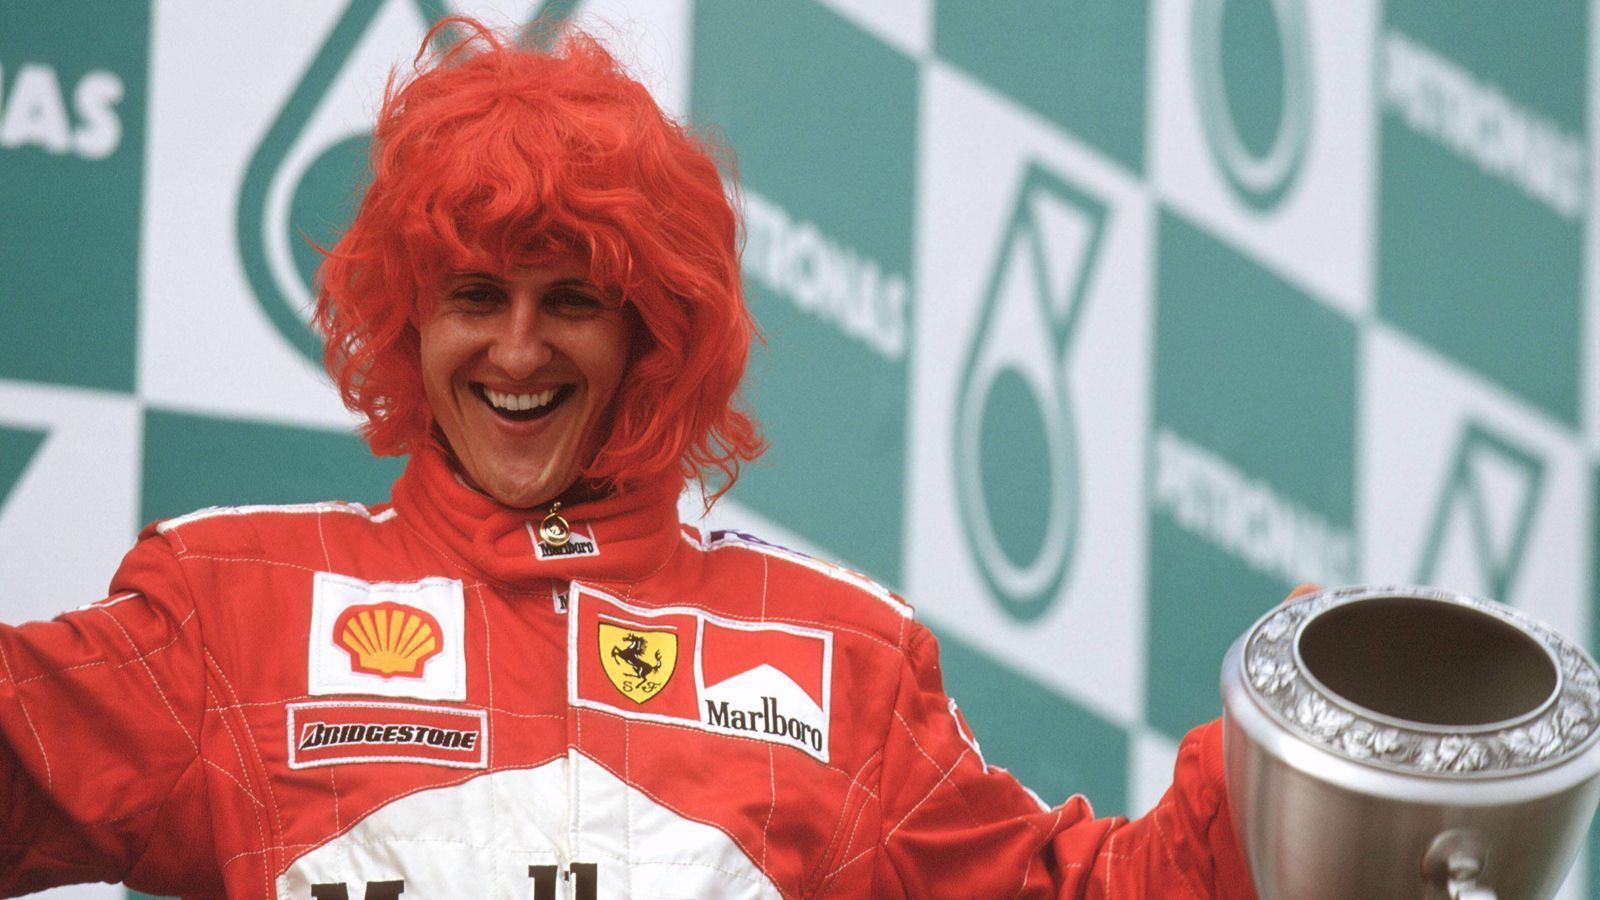 
                <strong>Michael Schumacher feiert ersten WM-Titel mit Ferrari</strong><br>
                In seiner fünften Saison bei Ferrari krönt sich Michael Schumacher wieder zum Weltmeister. Es ist sein dritter WM-Titel, aber der erste mit Ferrari, den er mit einer roten Perücke feiert. Ganz Deutschland und Italien bejubeln Schumi.
              